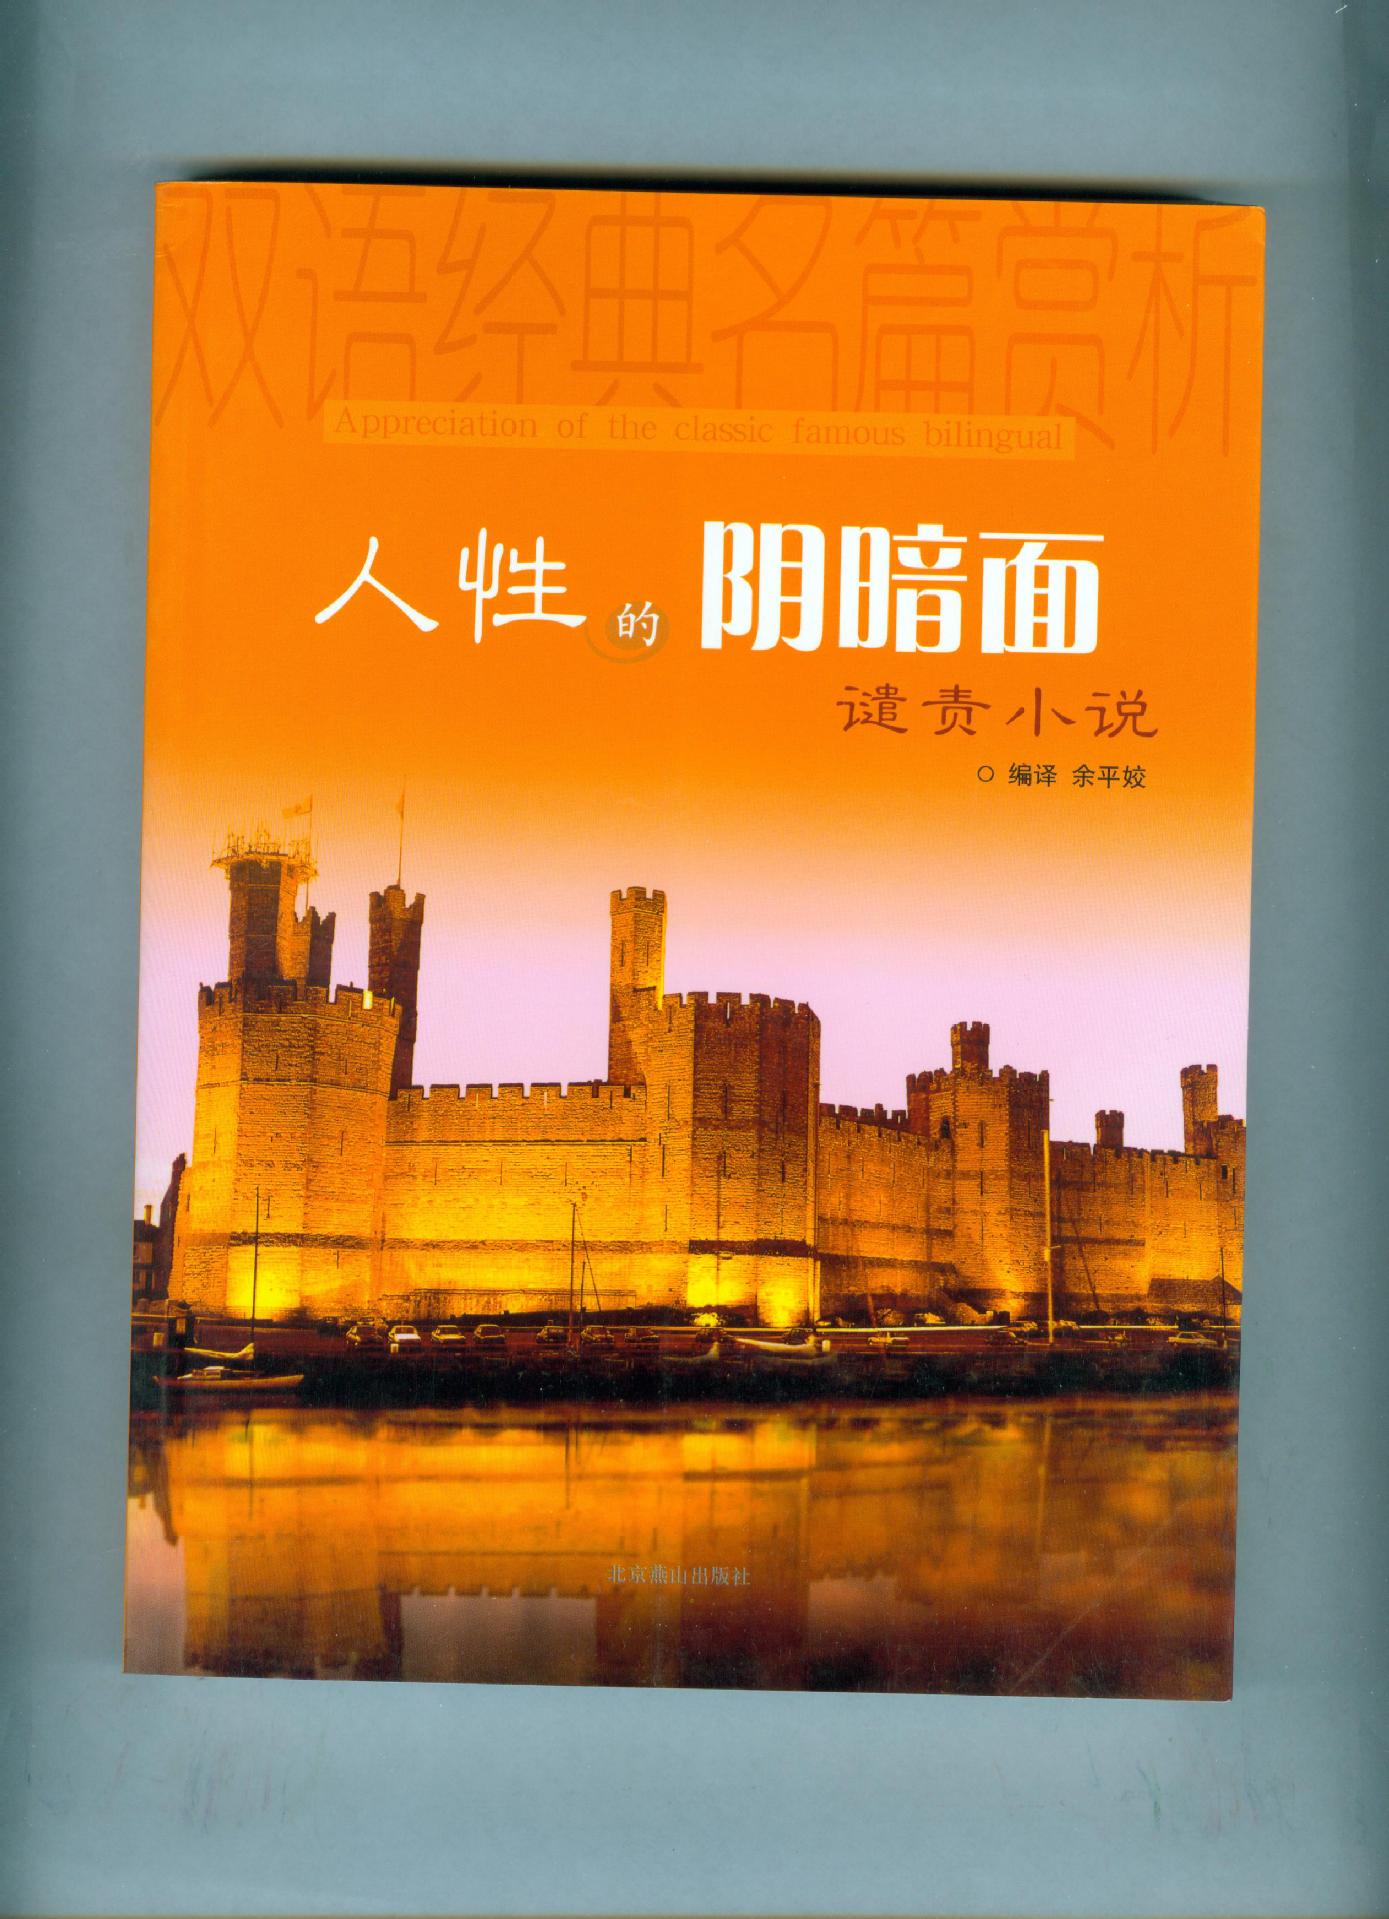 袁伟江：中国现代文学界的璀璨之星，深刻影响一代又一代读者的文